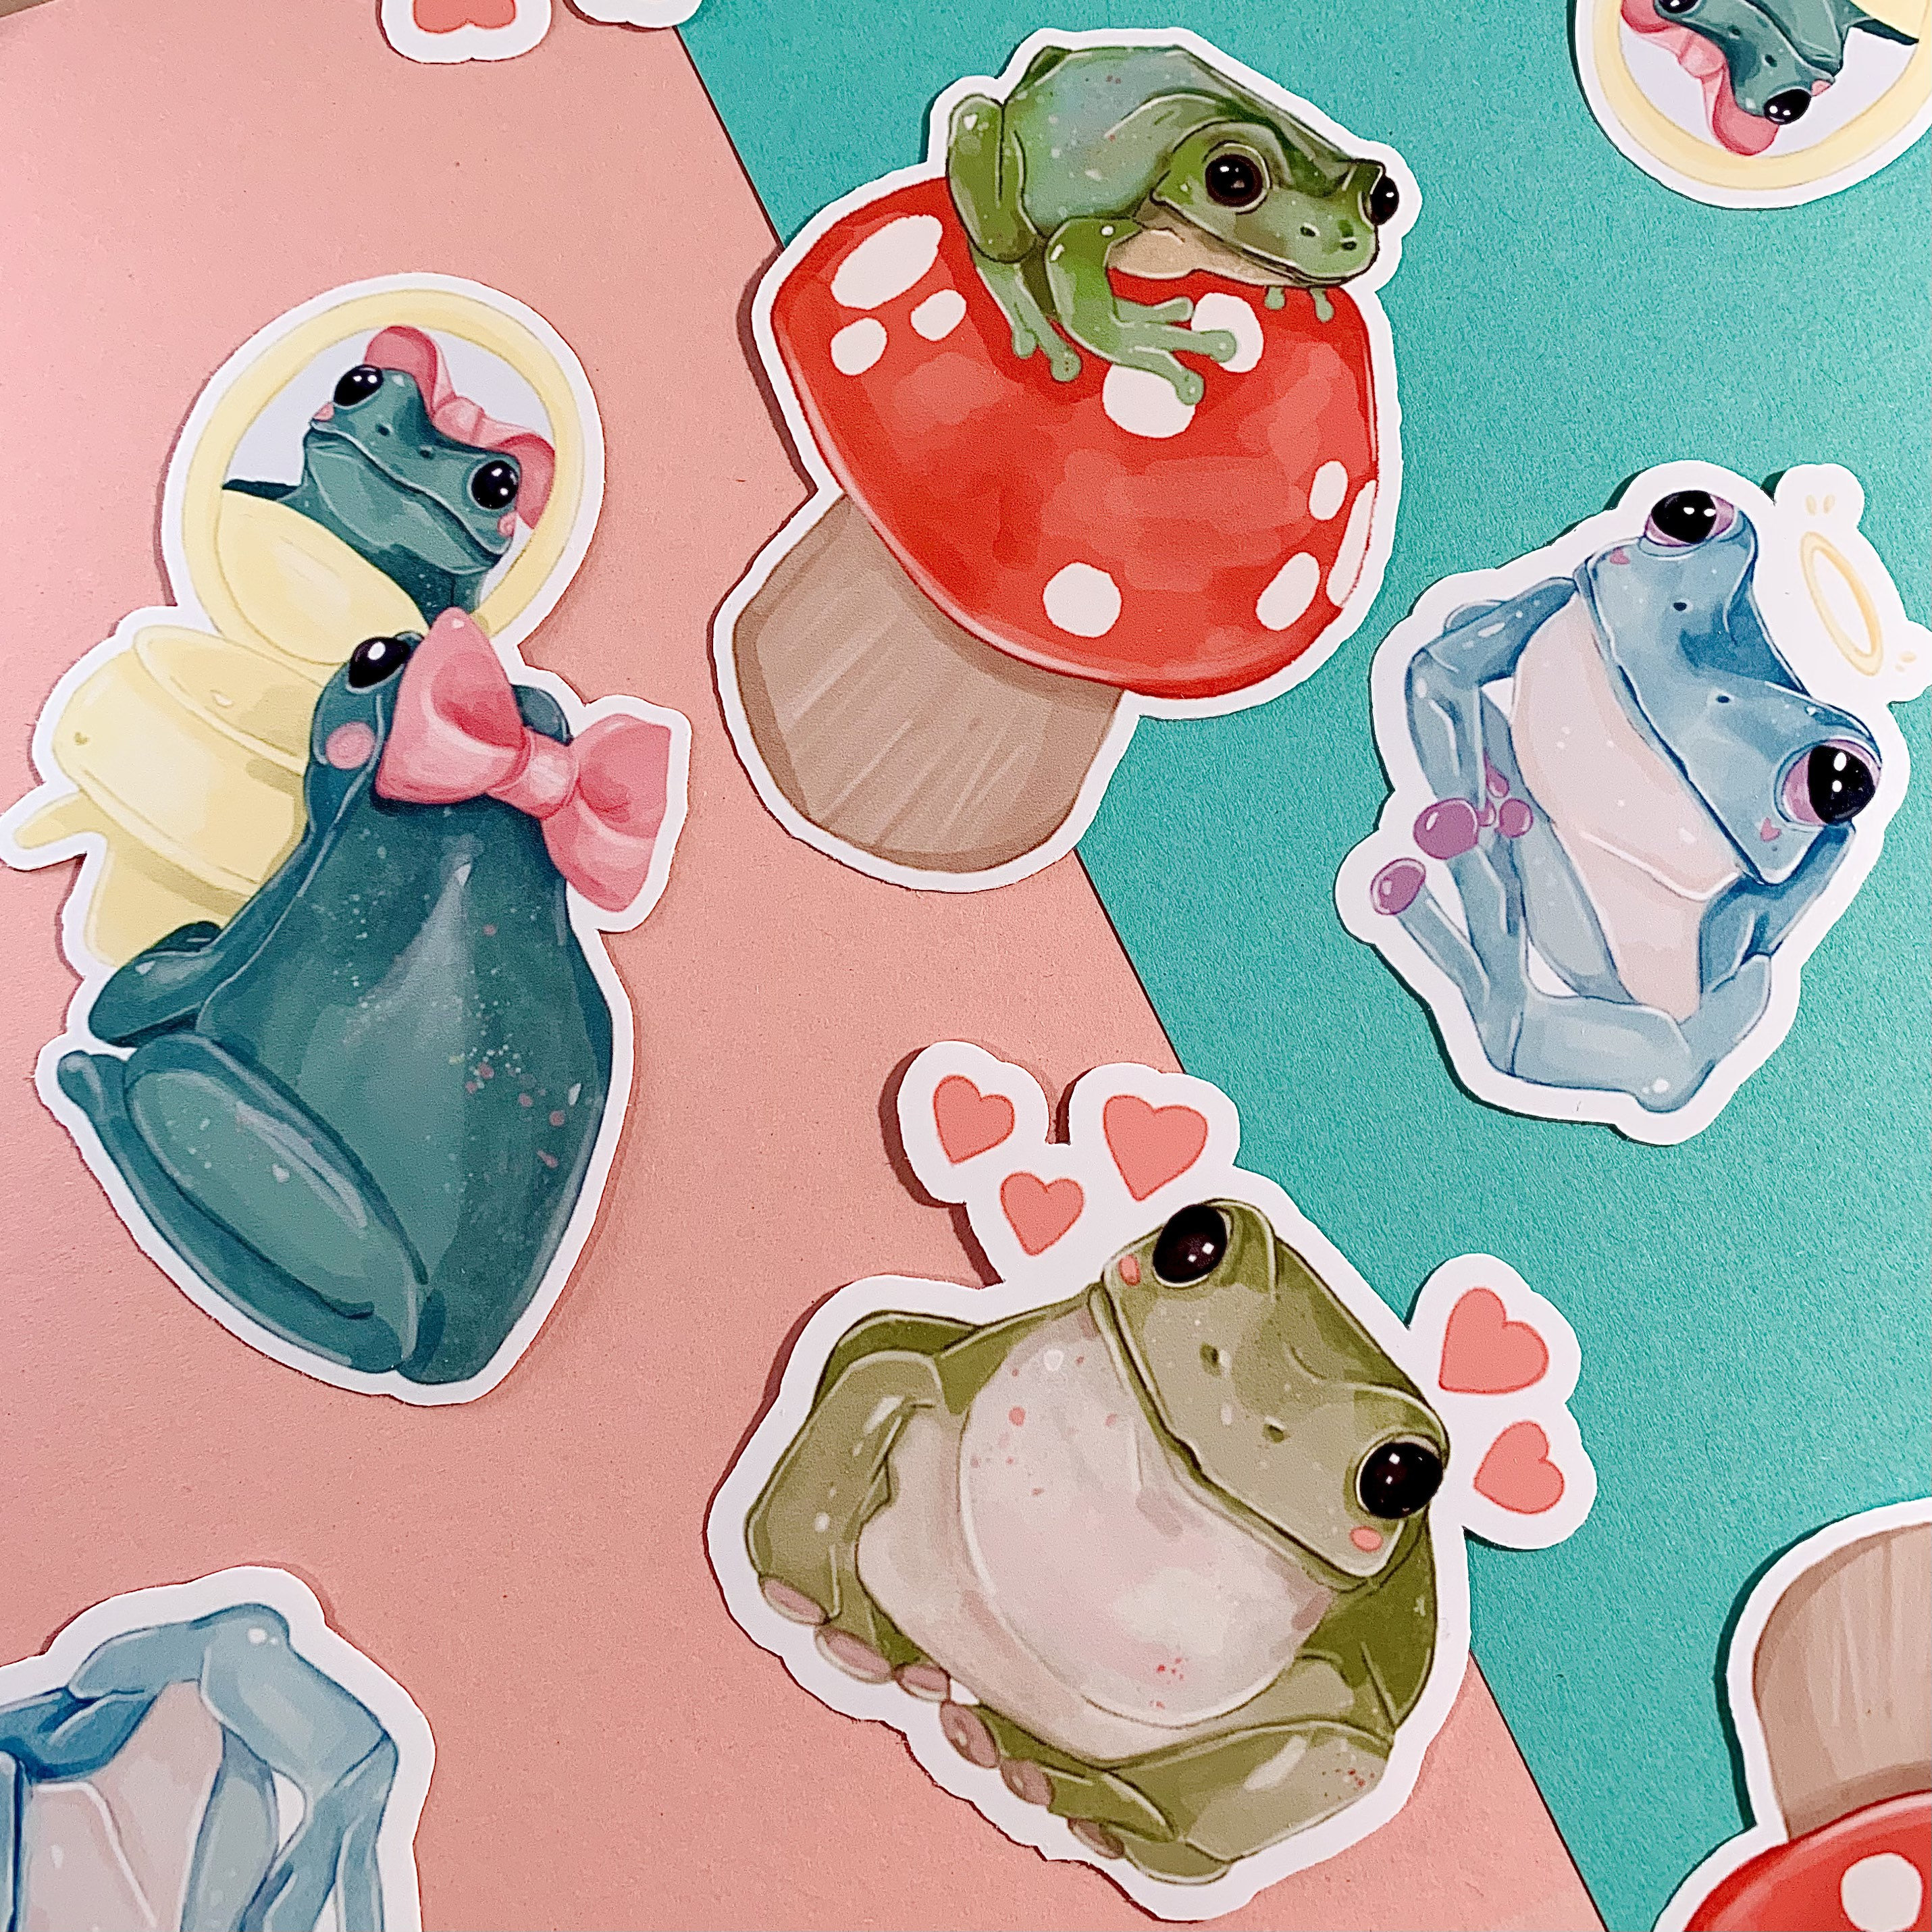 Frog Stickers Frog Buddies 4.0 Sticker Pack Laptop Sticker Vinyl